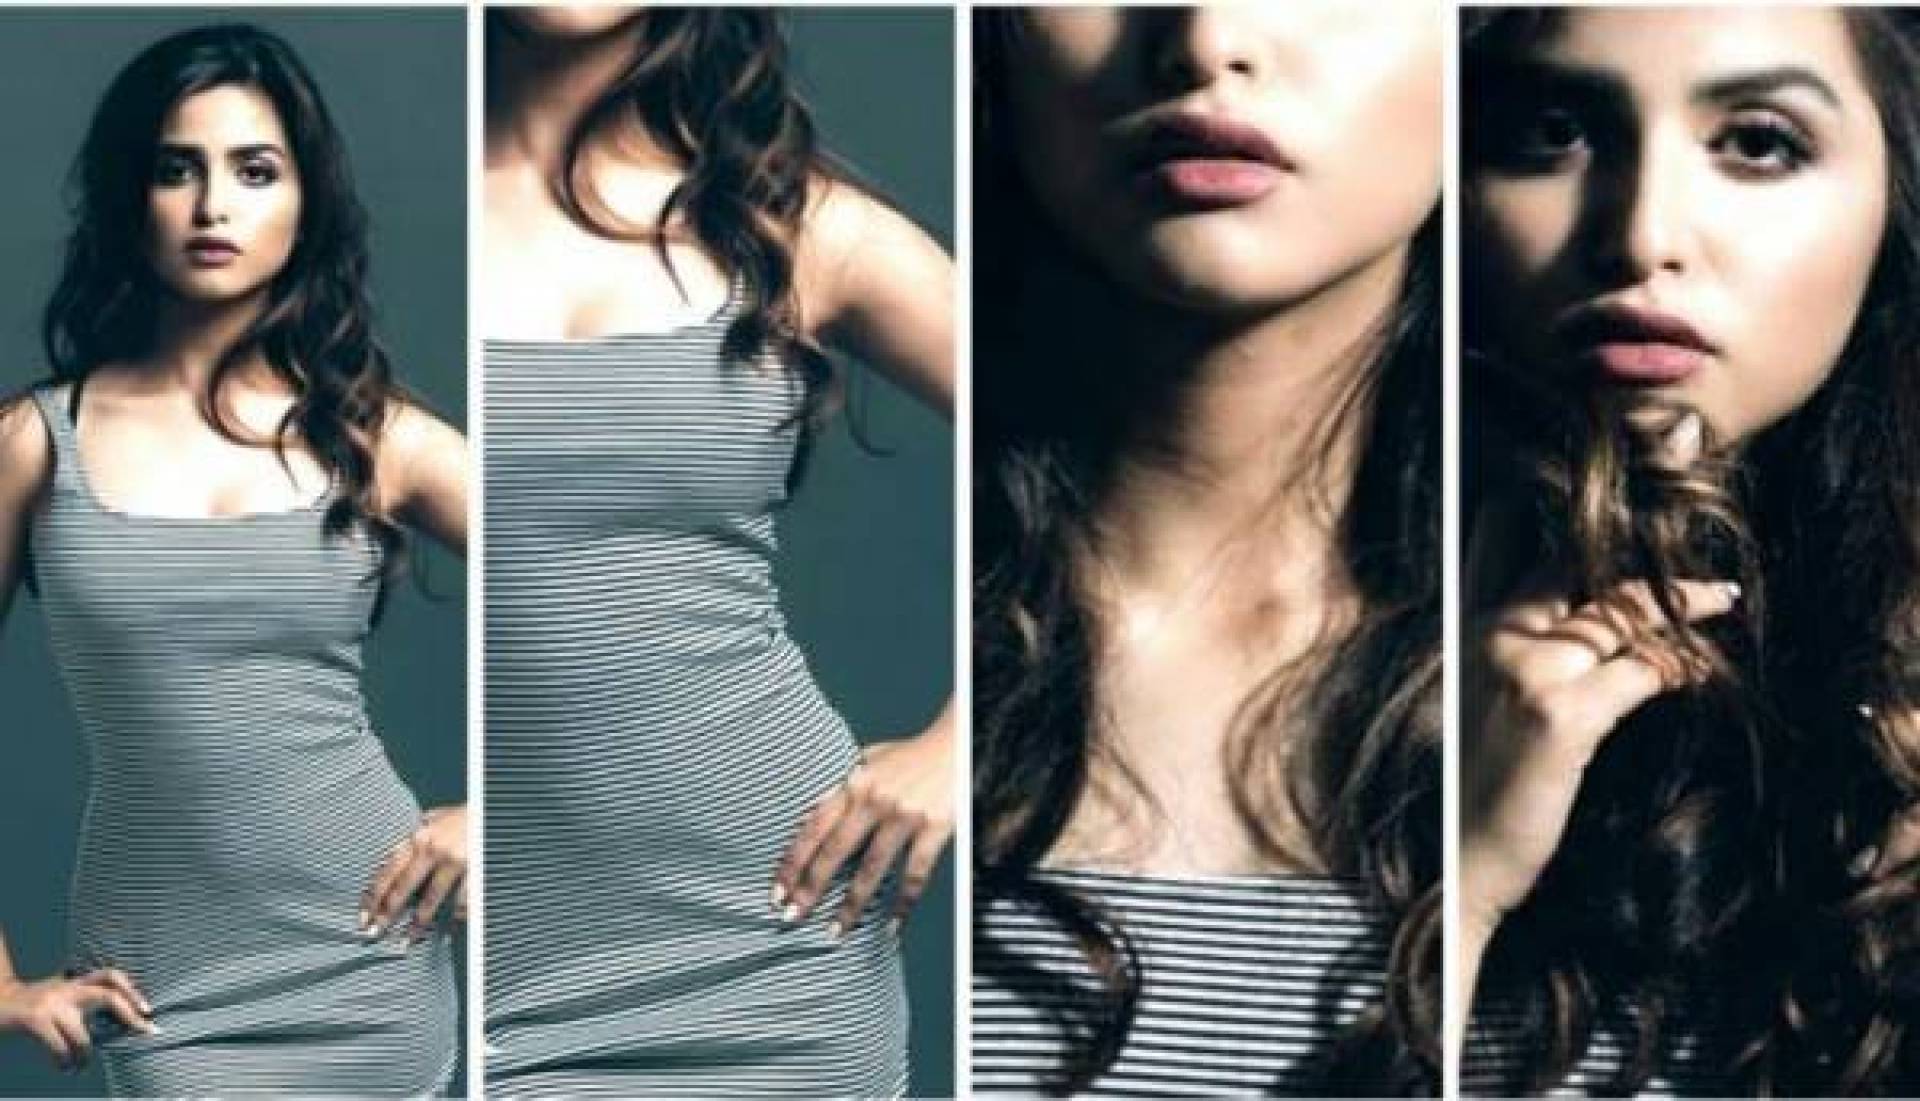 بالفيديو - حلا الترك بإطلالة تكشف بطنها للمرة الأولى وتسريحة شعر جديدة | Laha Magazine